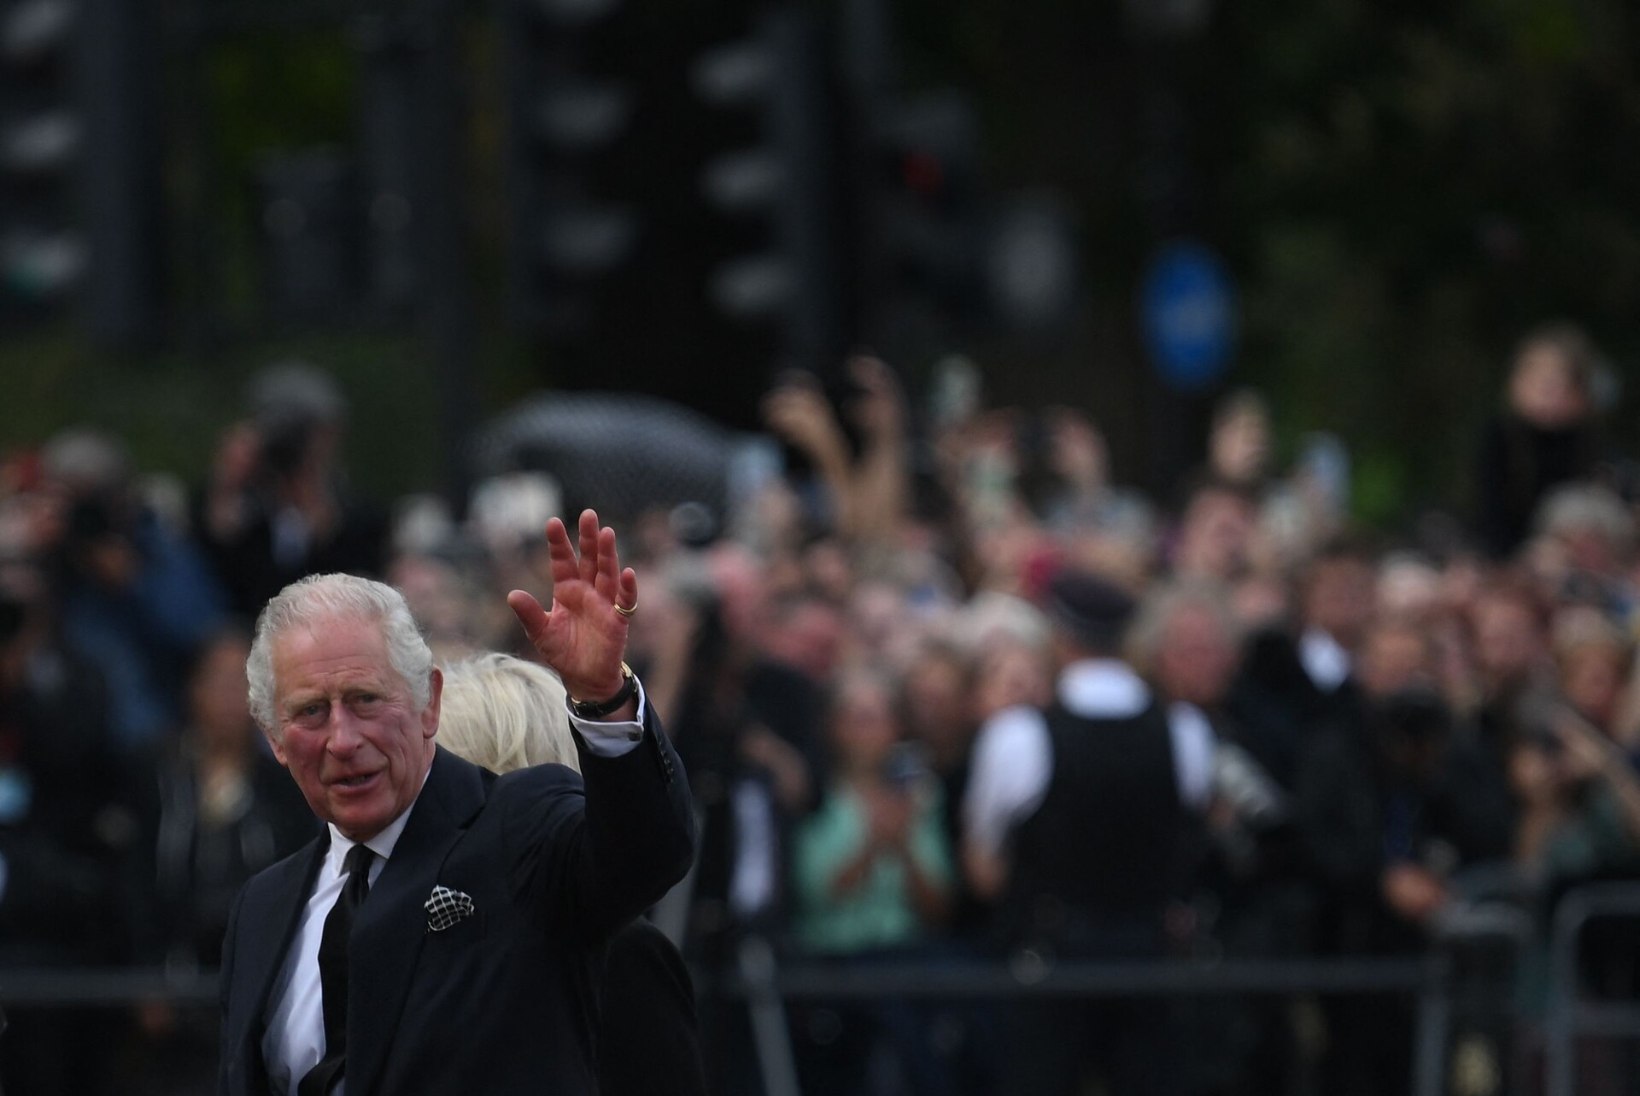 FOTOD | ESIMENE PILGUHEIT KUNINGALE: Charles III saabus Buckinghami paleesse ning kätles südamlikult rahvaga